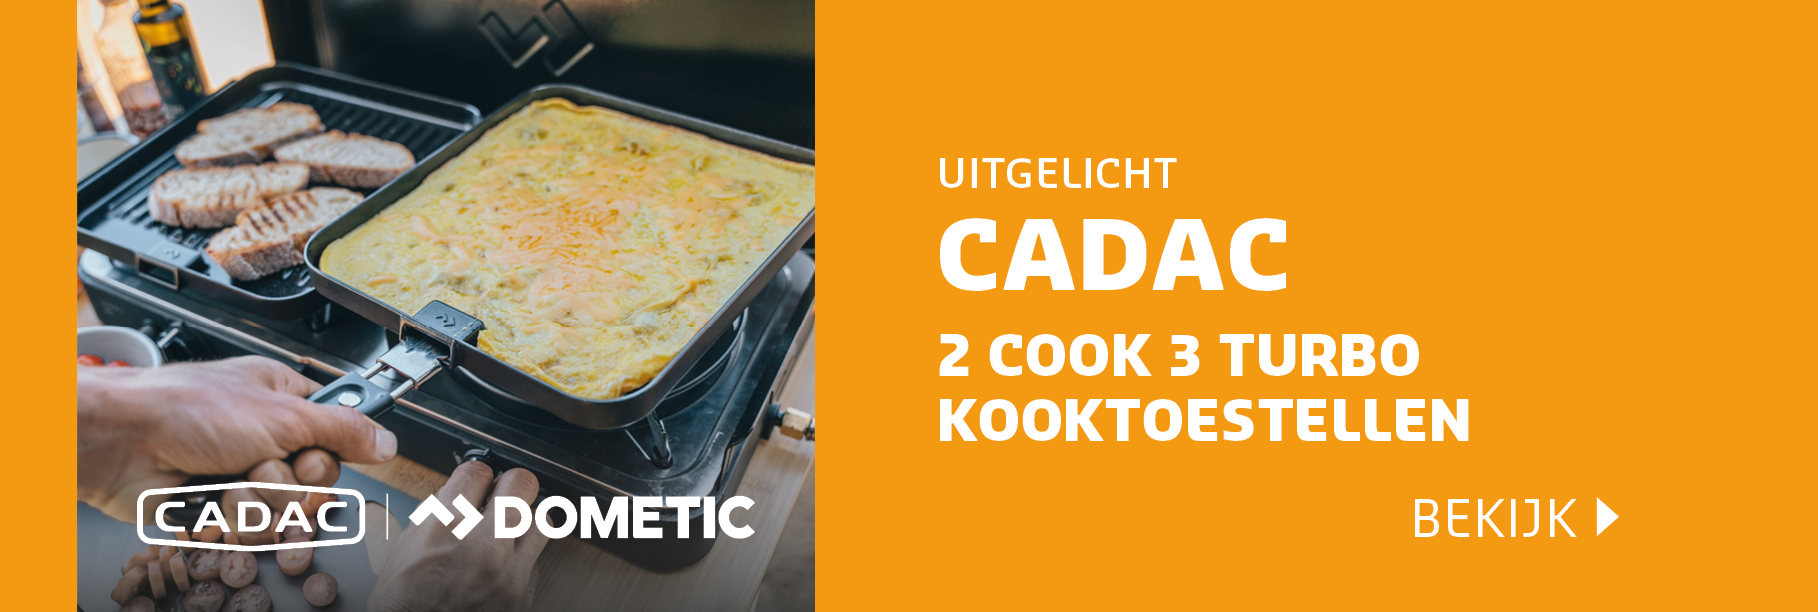 Bekijk onze Cadac 2 Cook 3 Turbo kooktoestellen